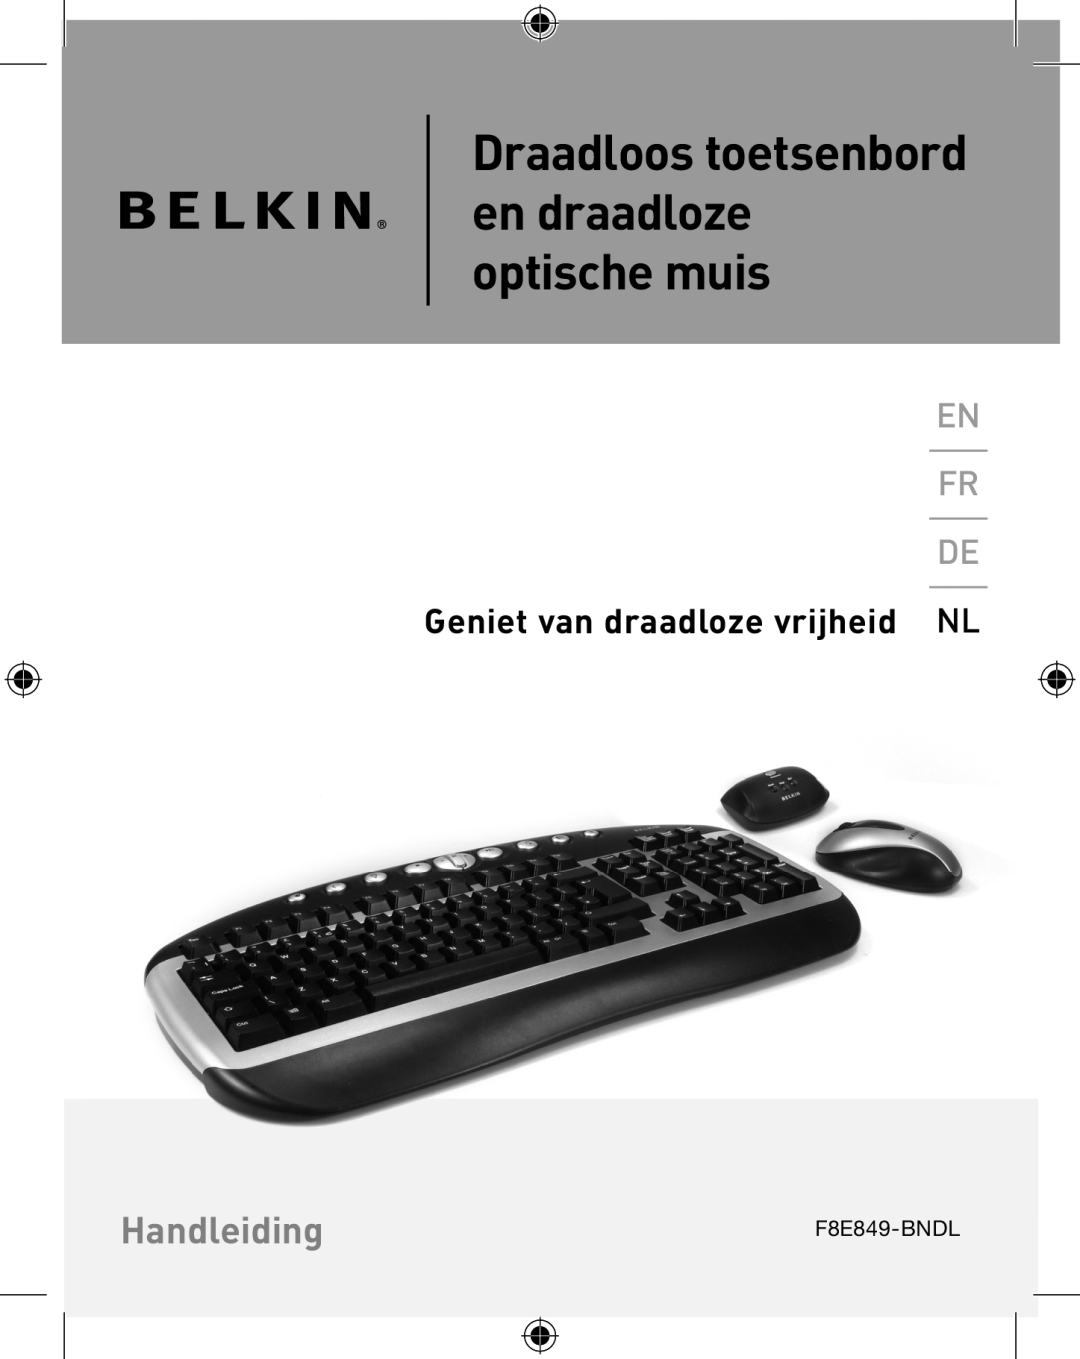 Belkin P74775UK Handleiding, Geniet van draadloze vrijheid NL, Draadloos toetsenbord en draadloze optische muis 